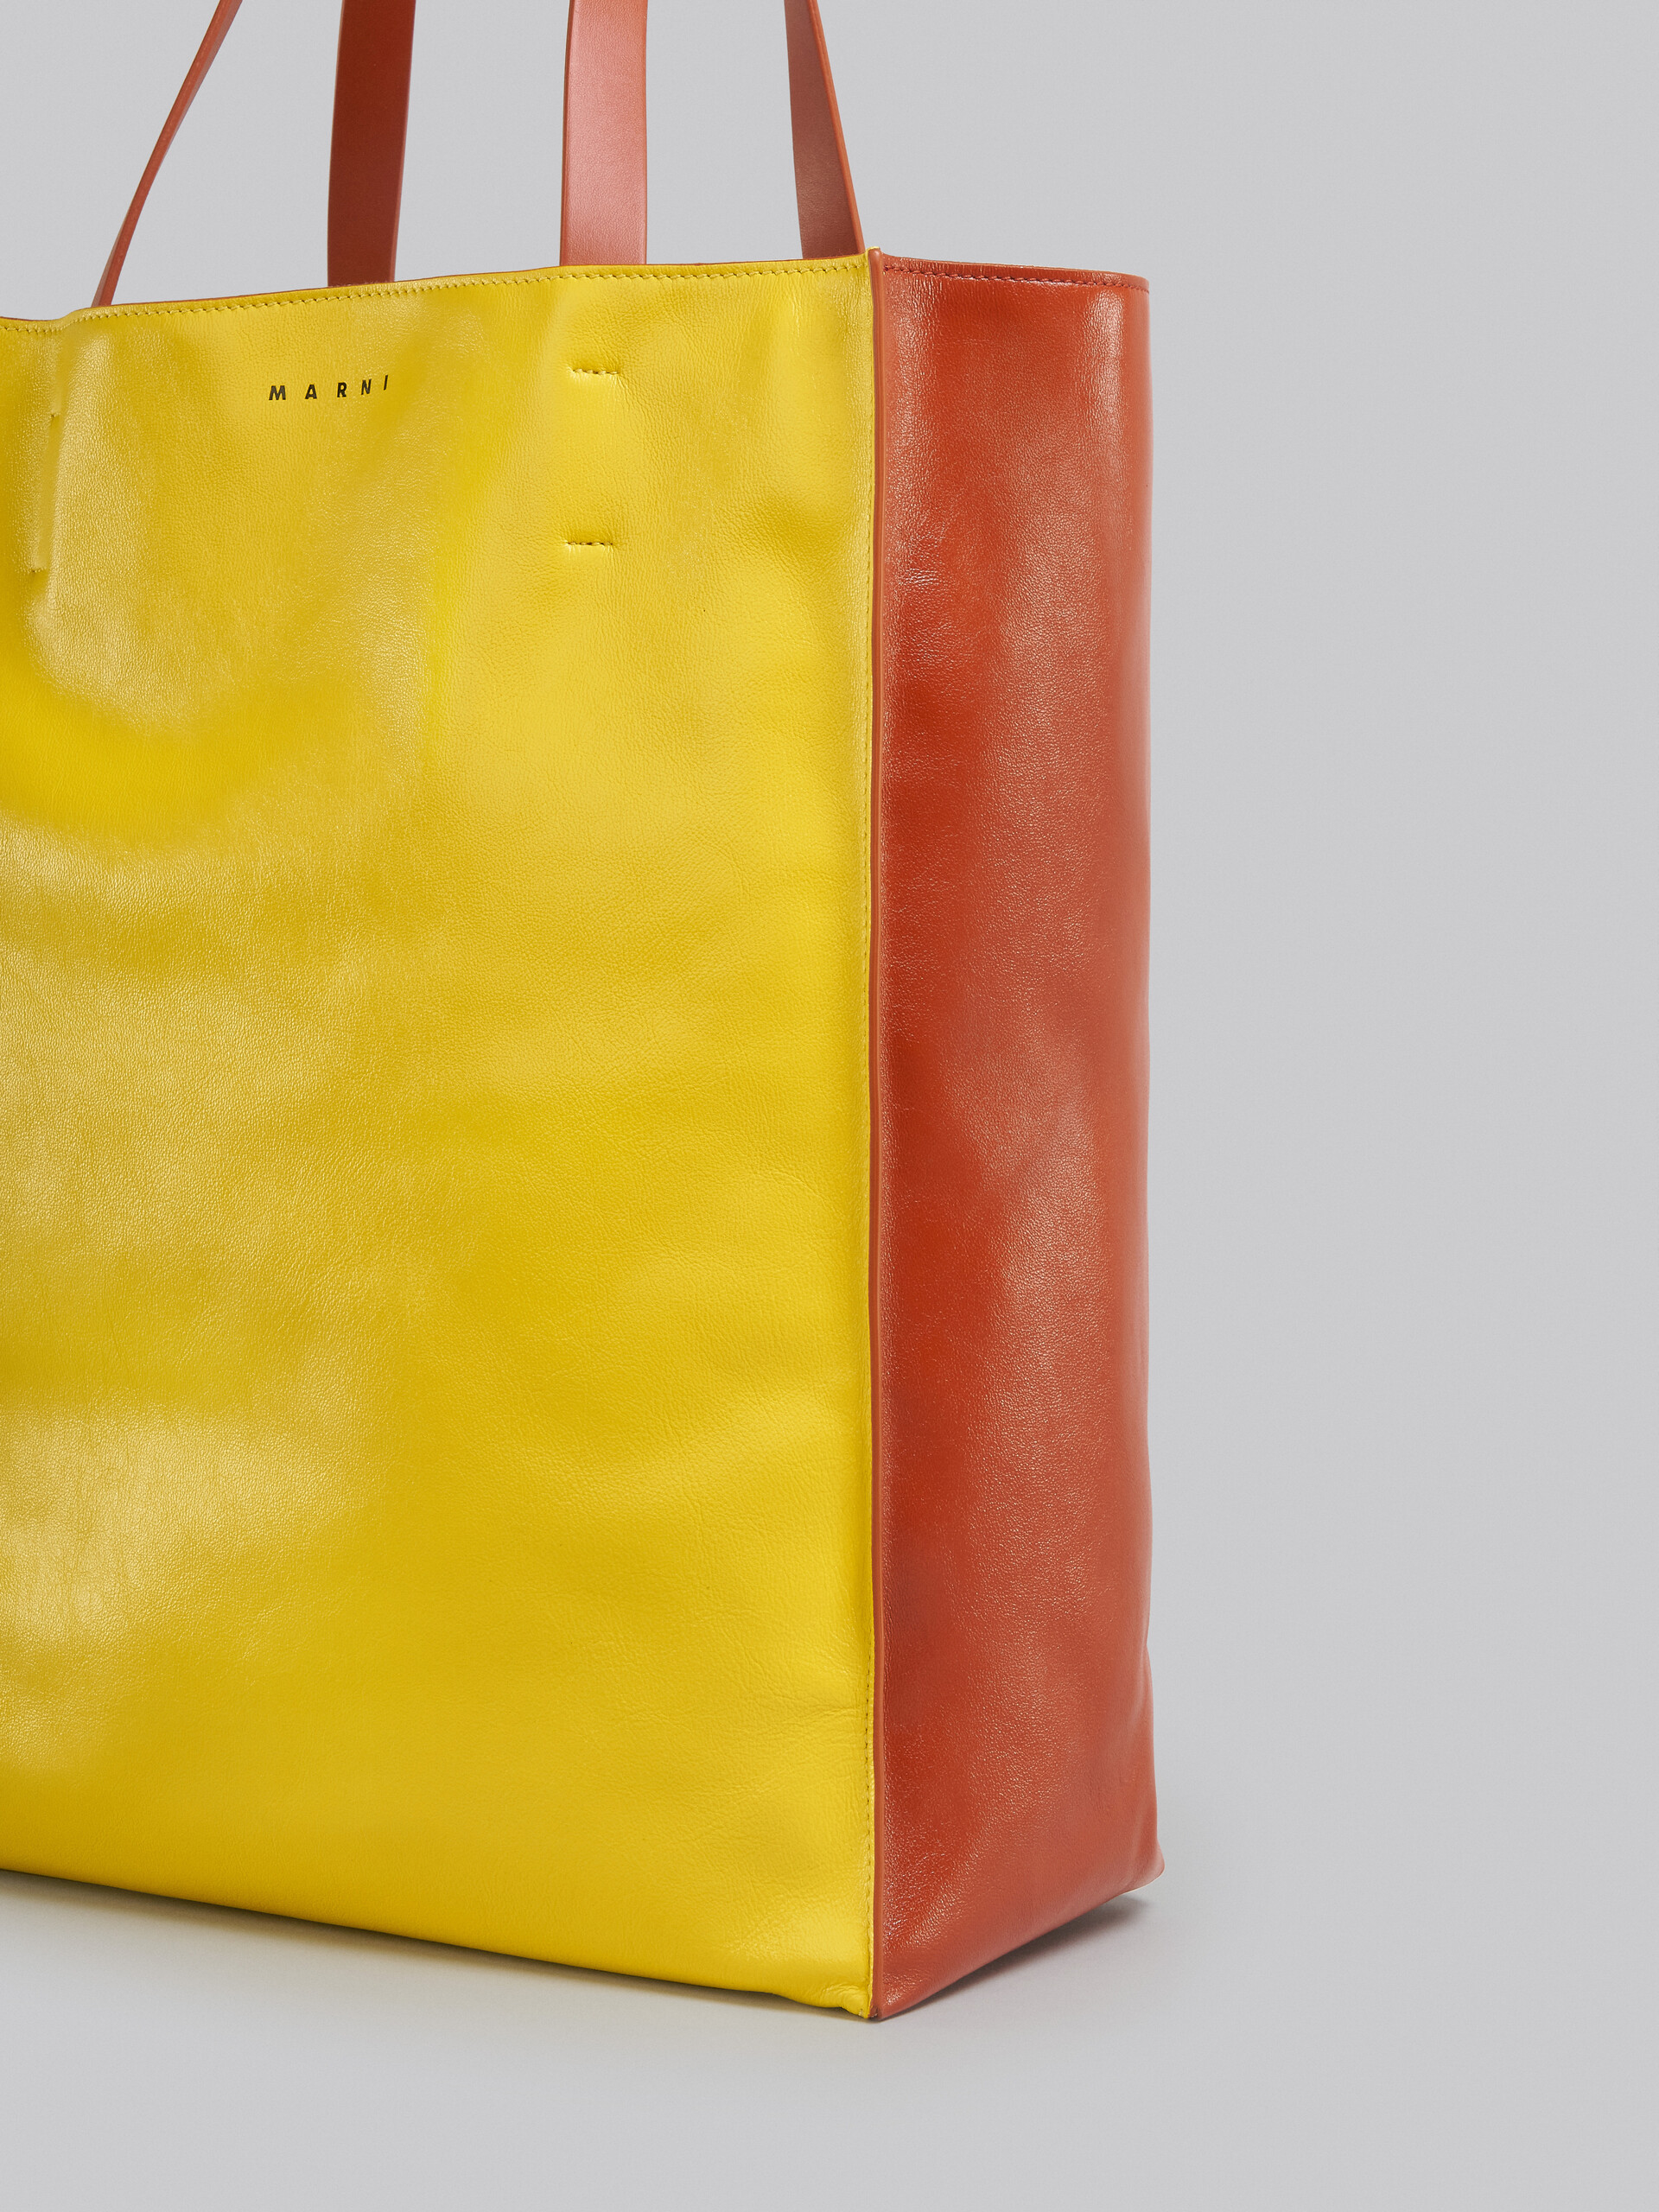 Grand sac MUSEO SOFT en cuir jaune et marron - Sacs cabas - Image 5